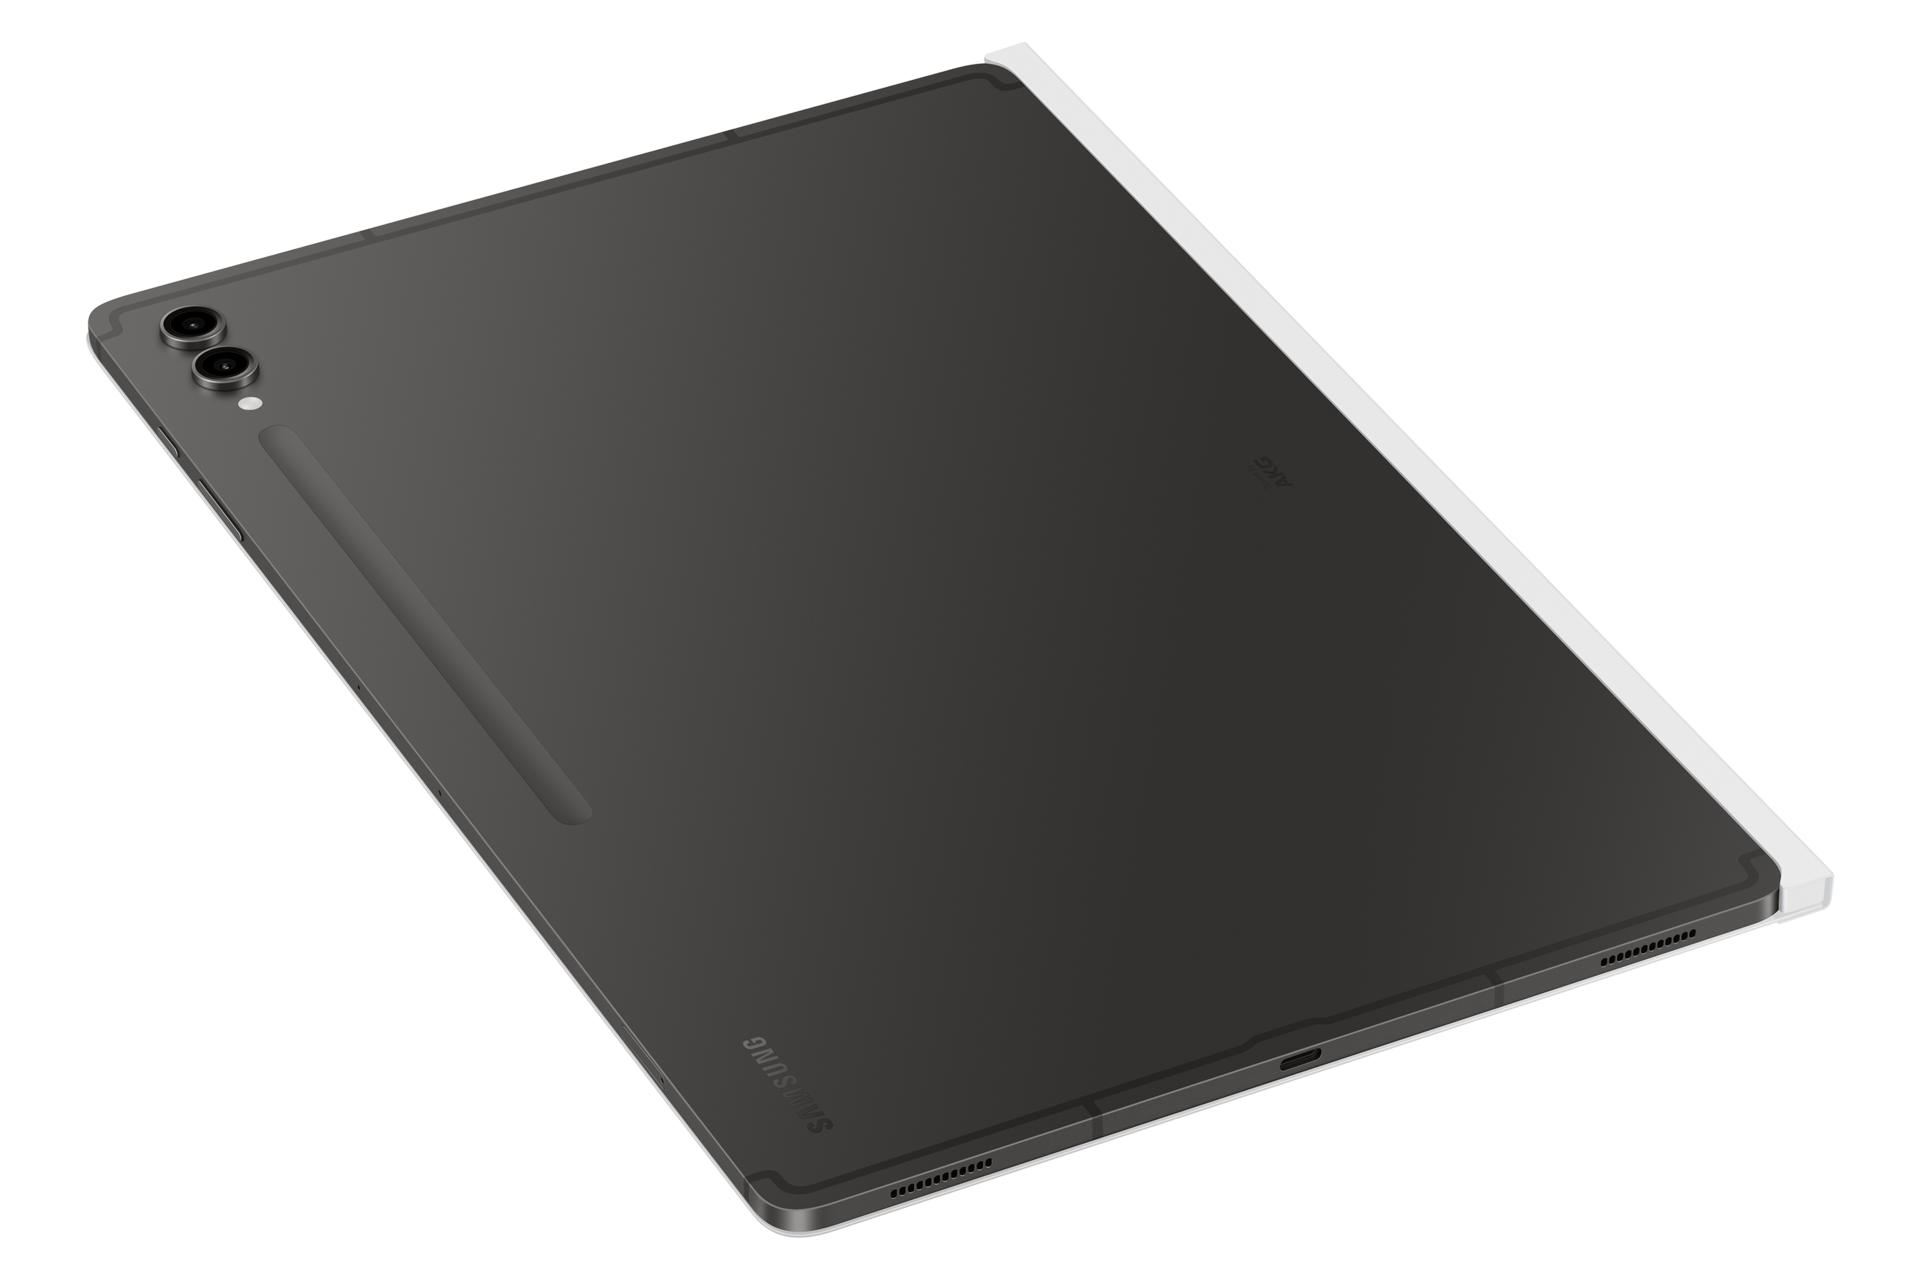 갤럭시 탭 S9 Ultra 노트페이퍼 스크린 (화이트) 제품에 갤럭시 탭을 장착하여 펼친 오른쪽 회전 후면 이미지